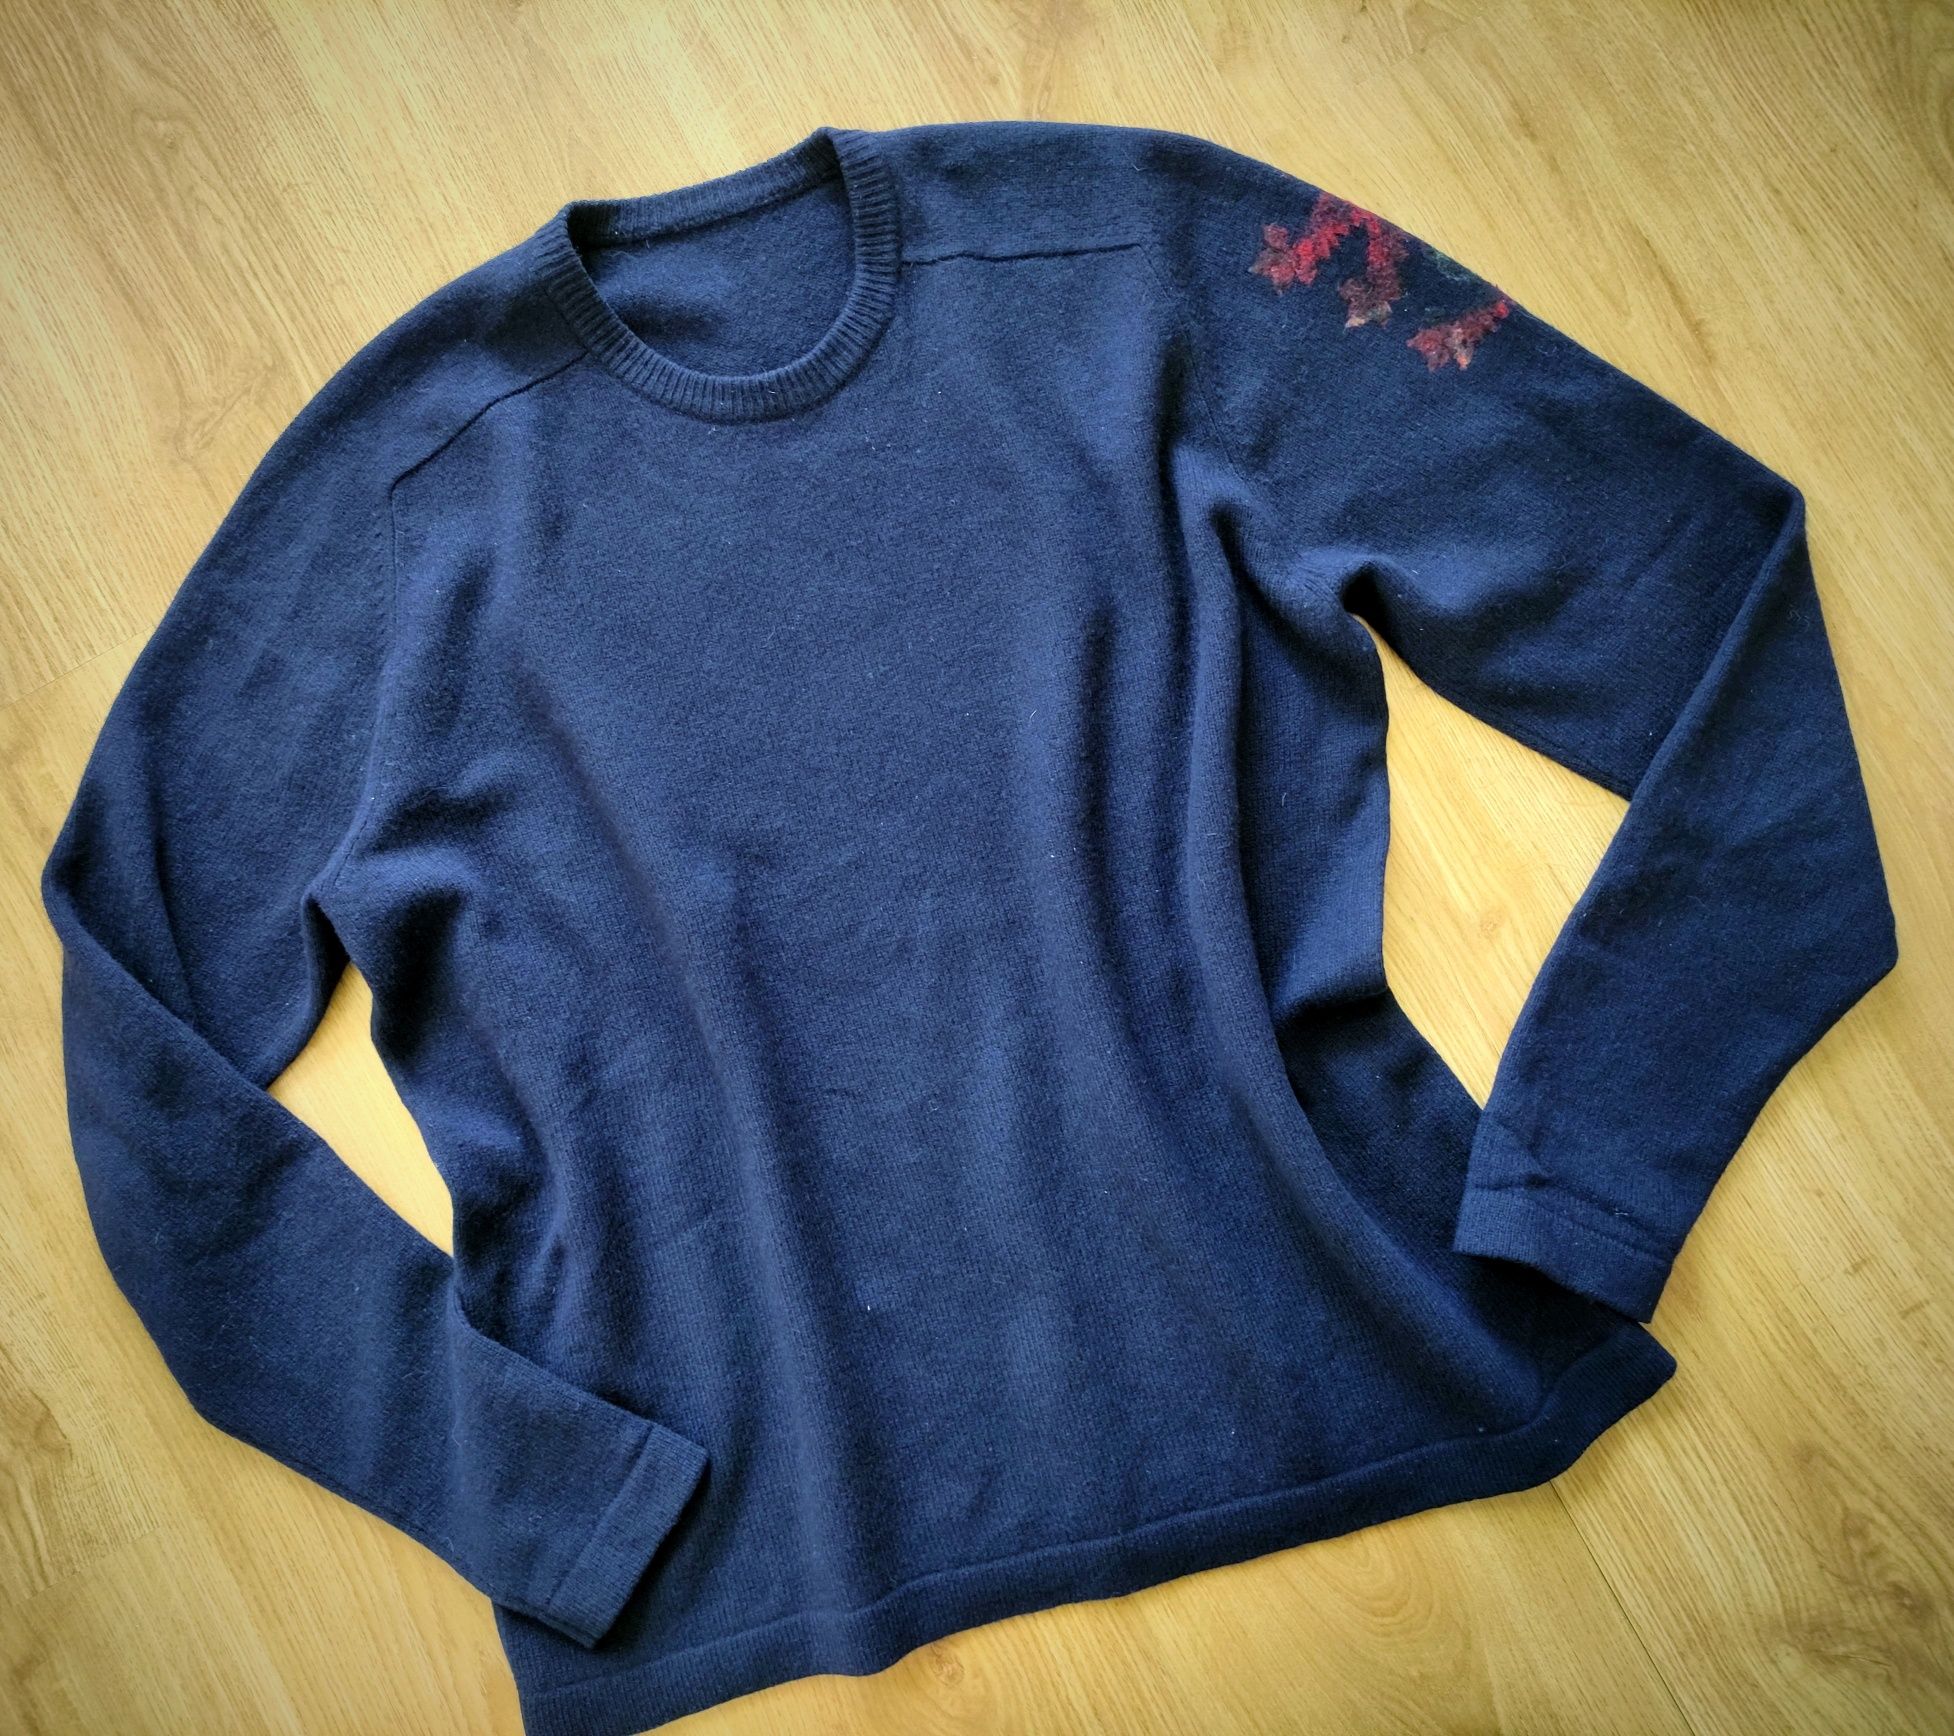 Wełniany granatowy sweter oversize 40/L, 100% wełna jagnięca, navy,